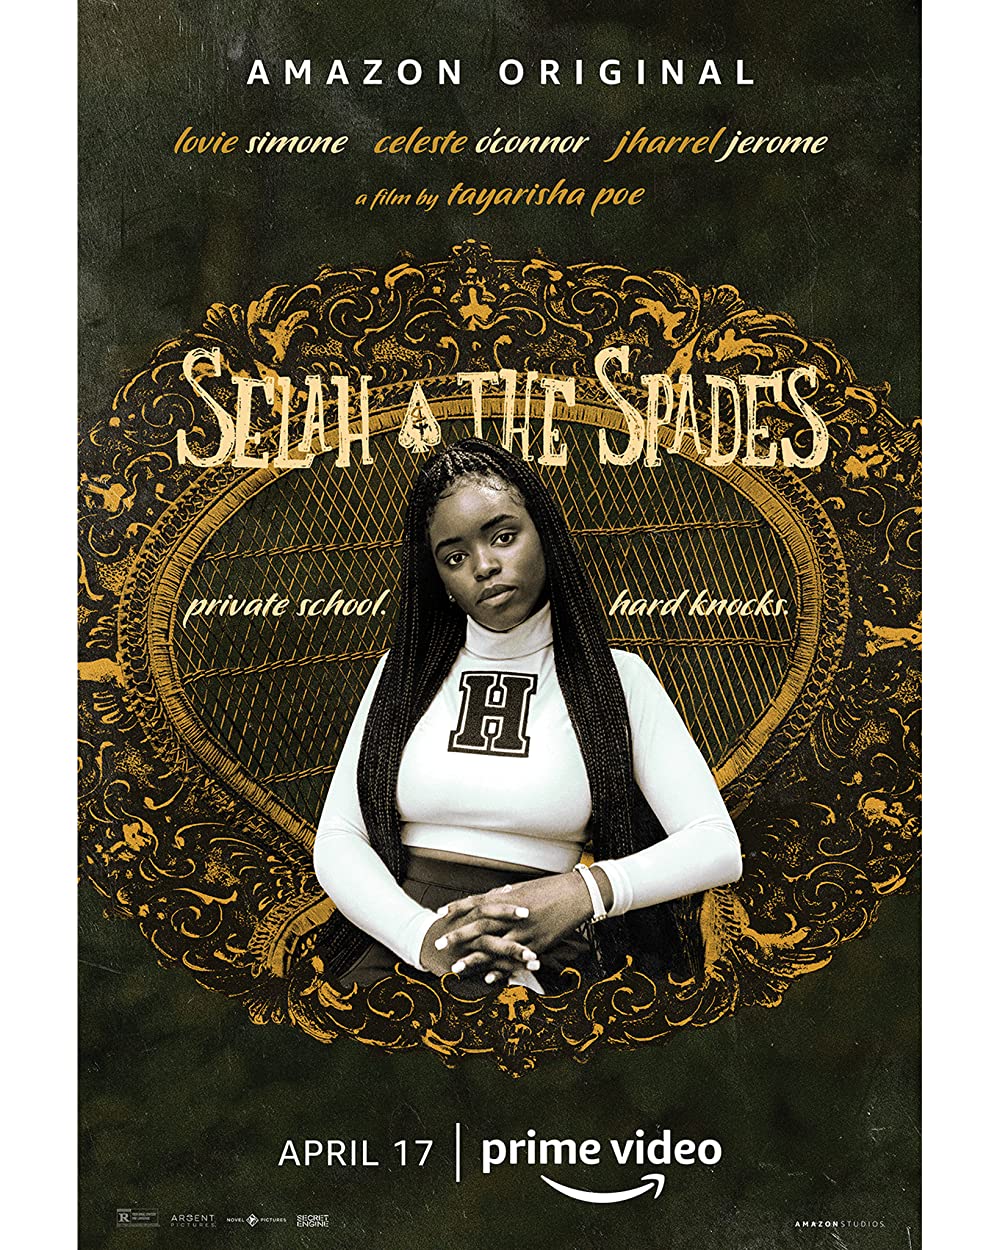 Filmbeschreibung zu Selah and the Spades